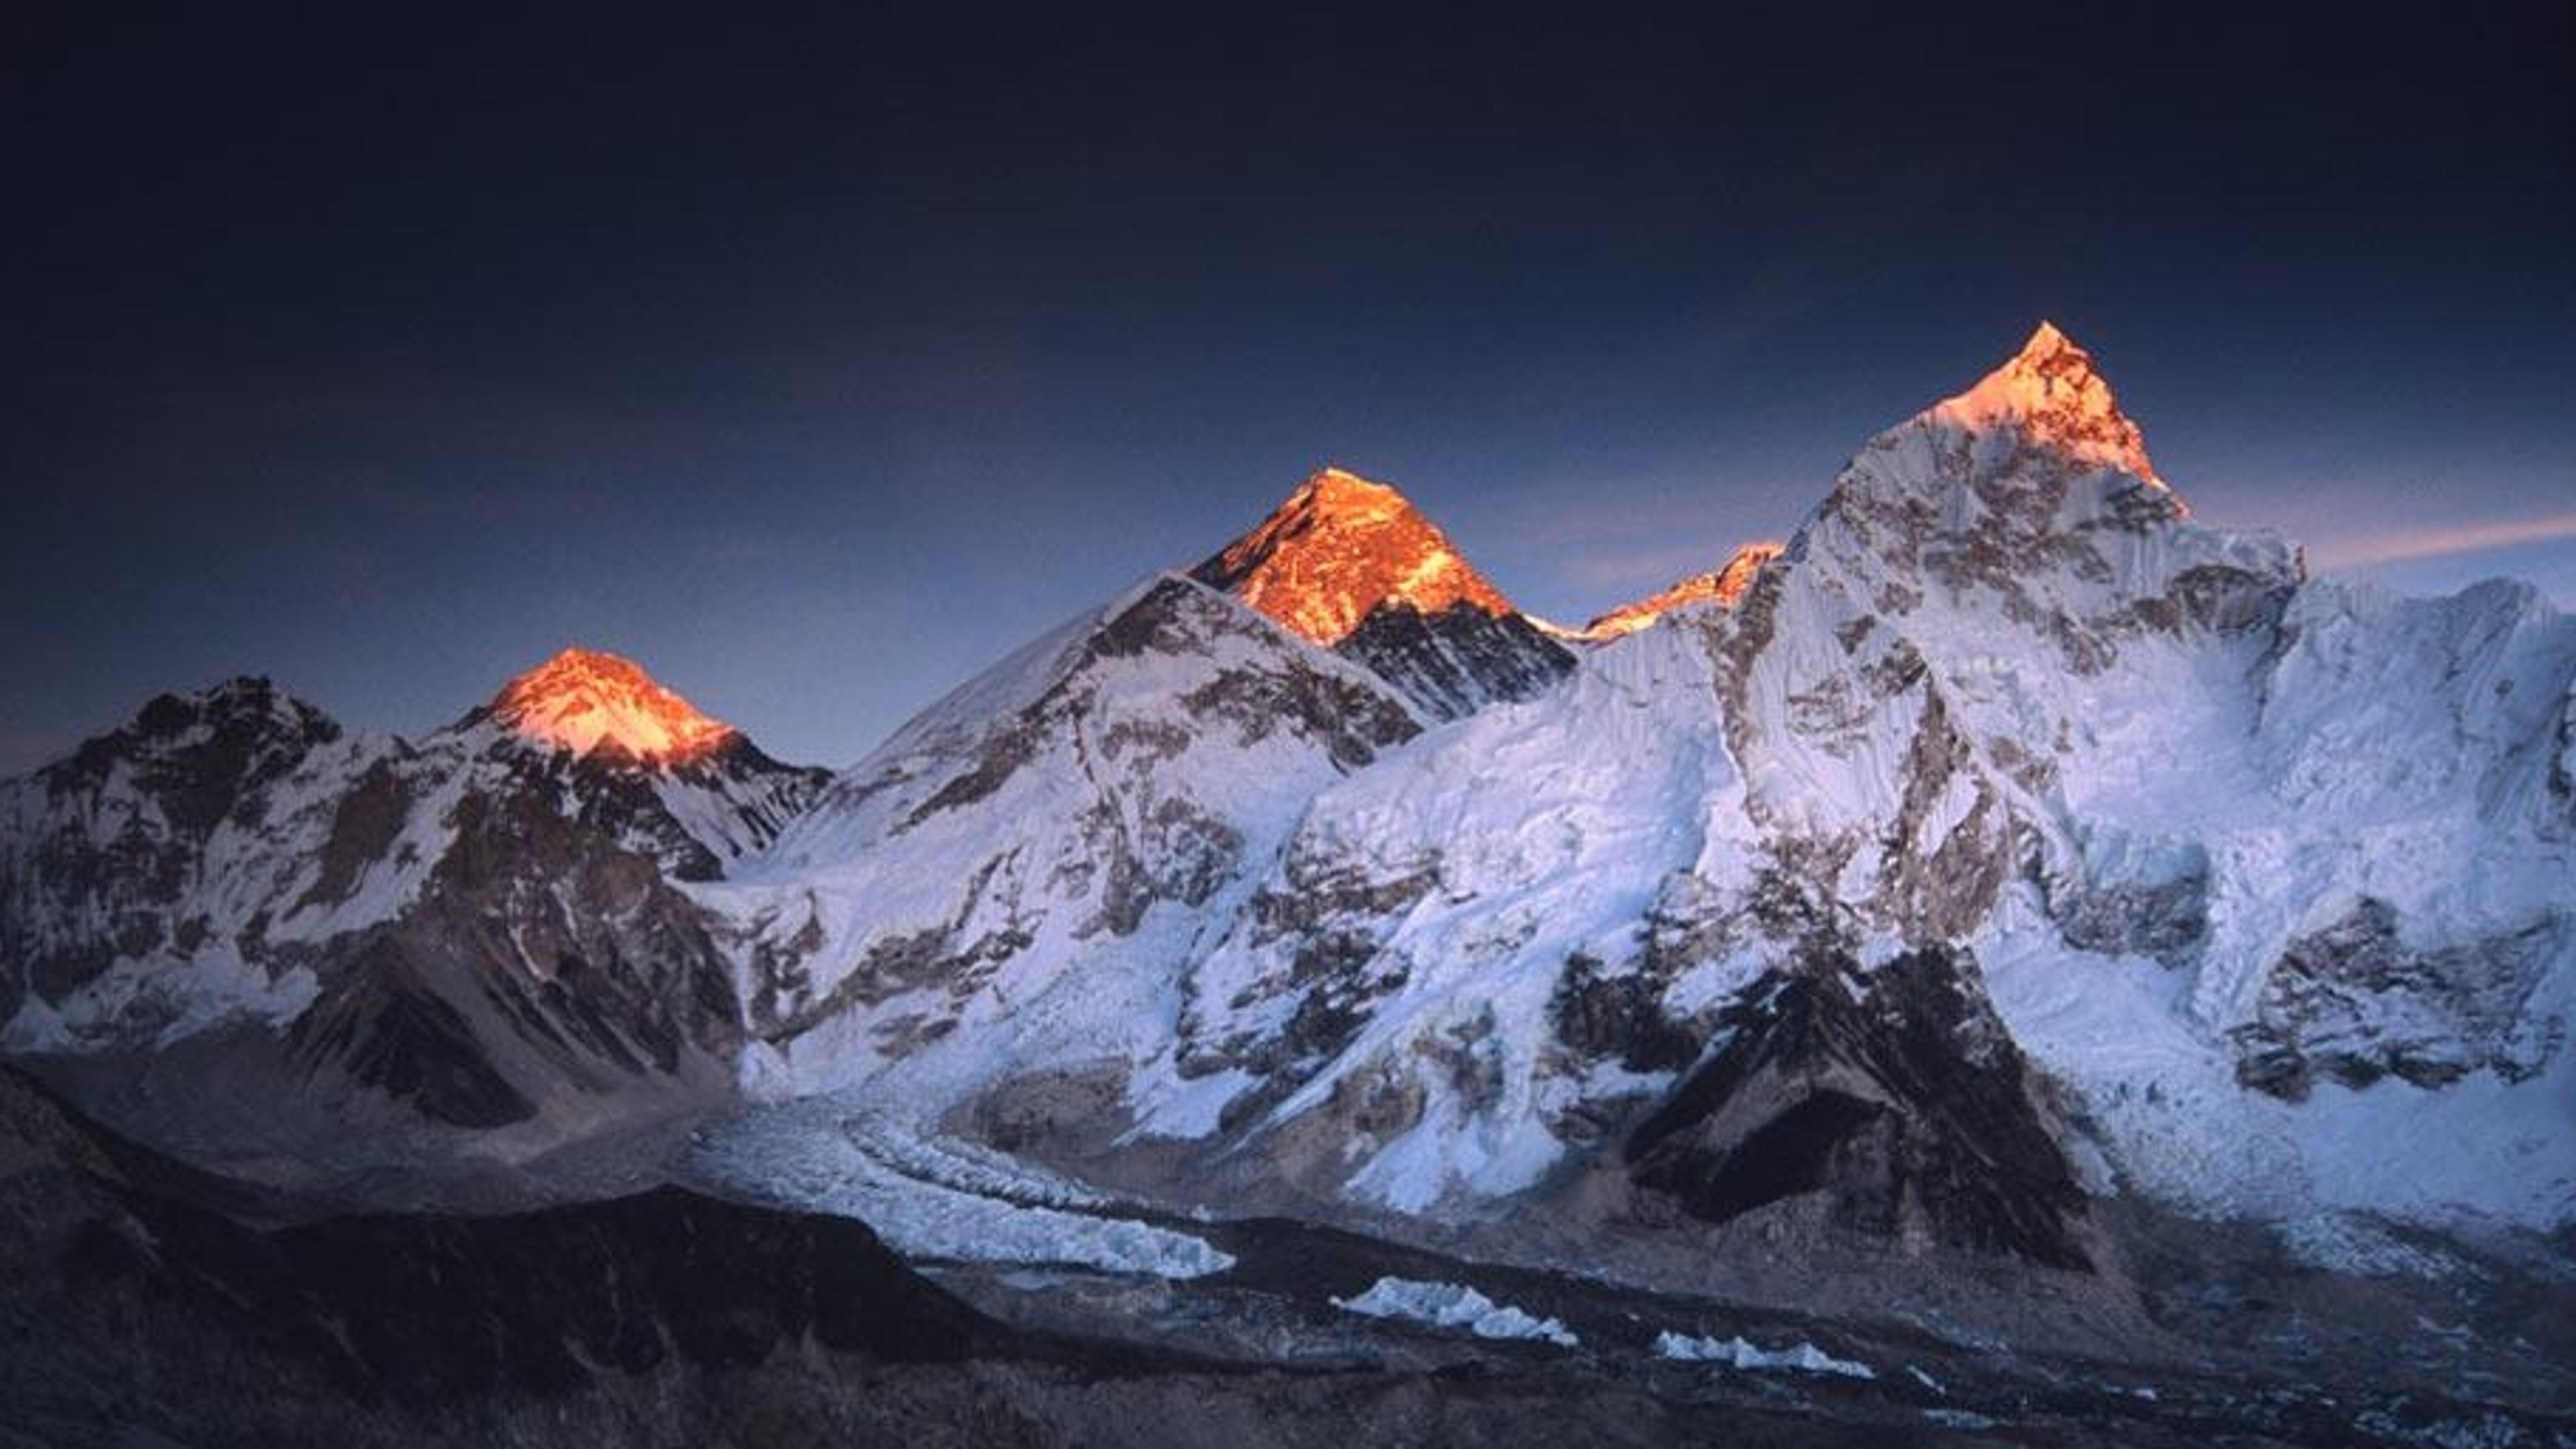 Das letzte Licht des Tages berührt den Gipfel des Mount Everest und